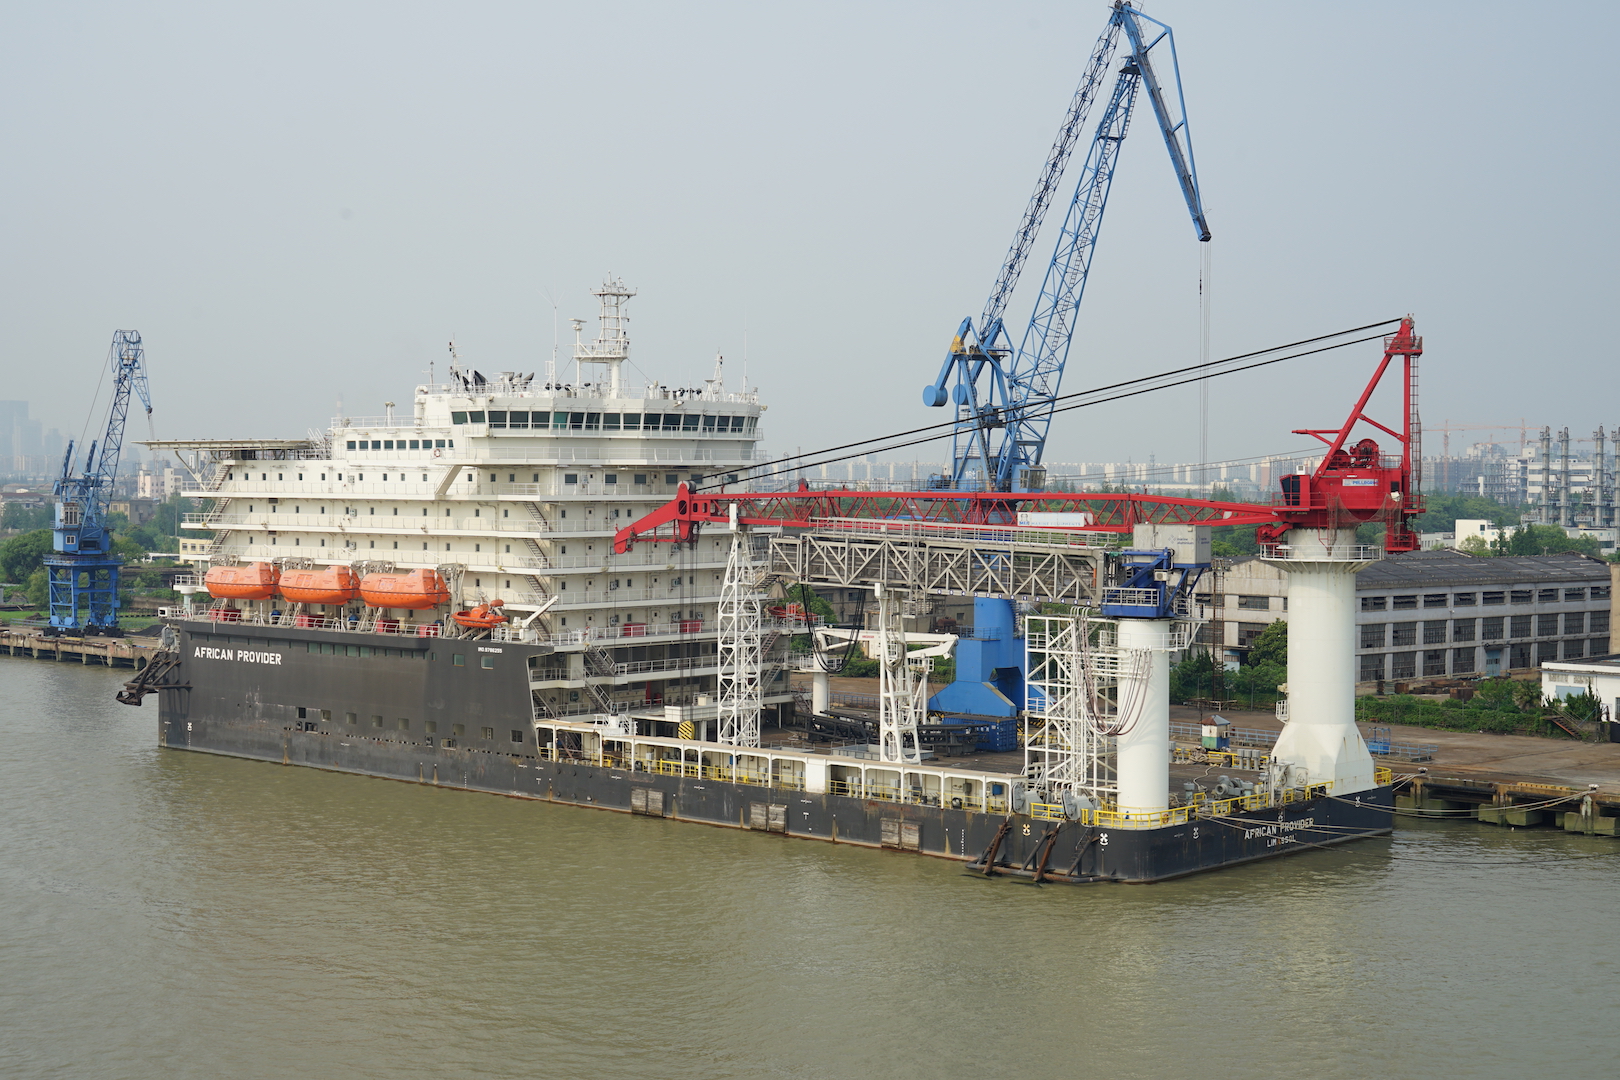 De African Provider, hier gefotografeerd in Shanghai, is een voorbeeld van een schip met een uitzonderlijk groot Cb.